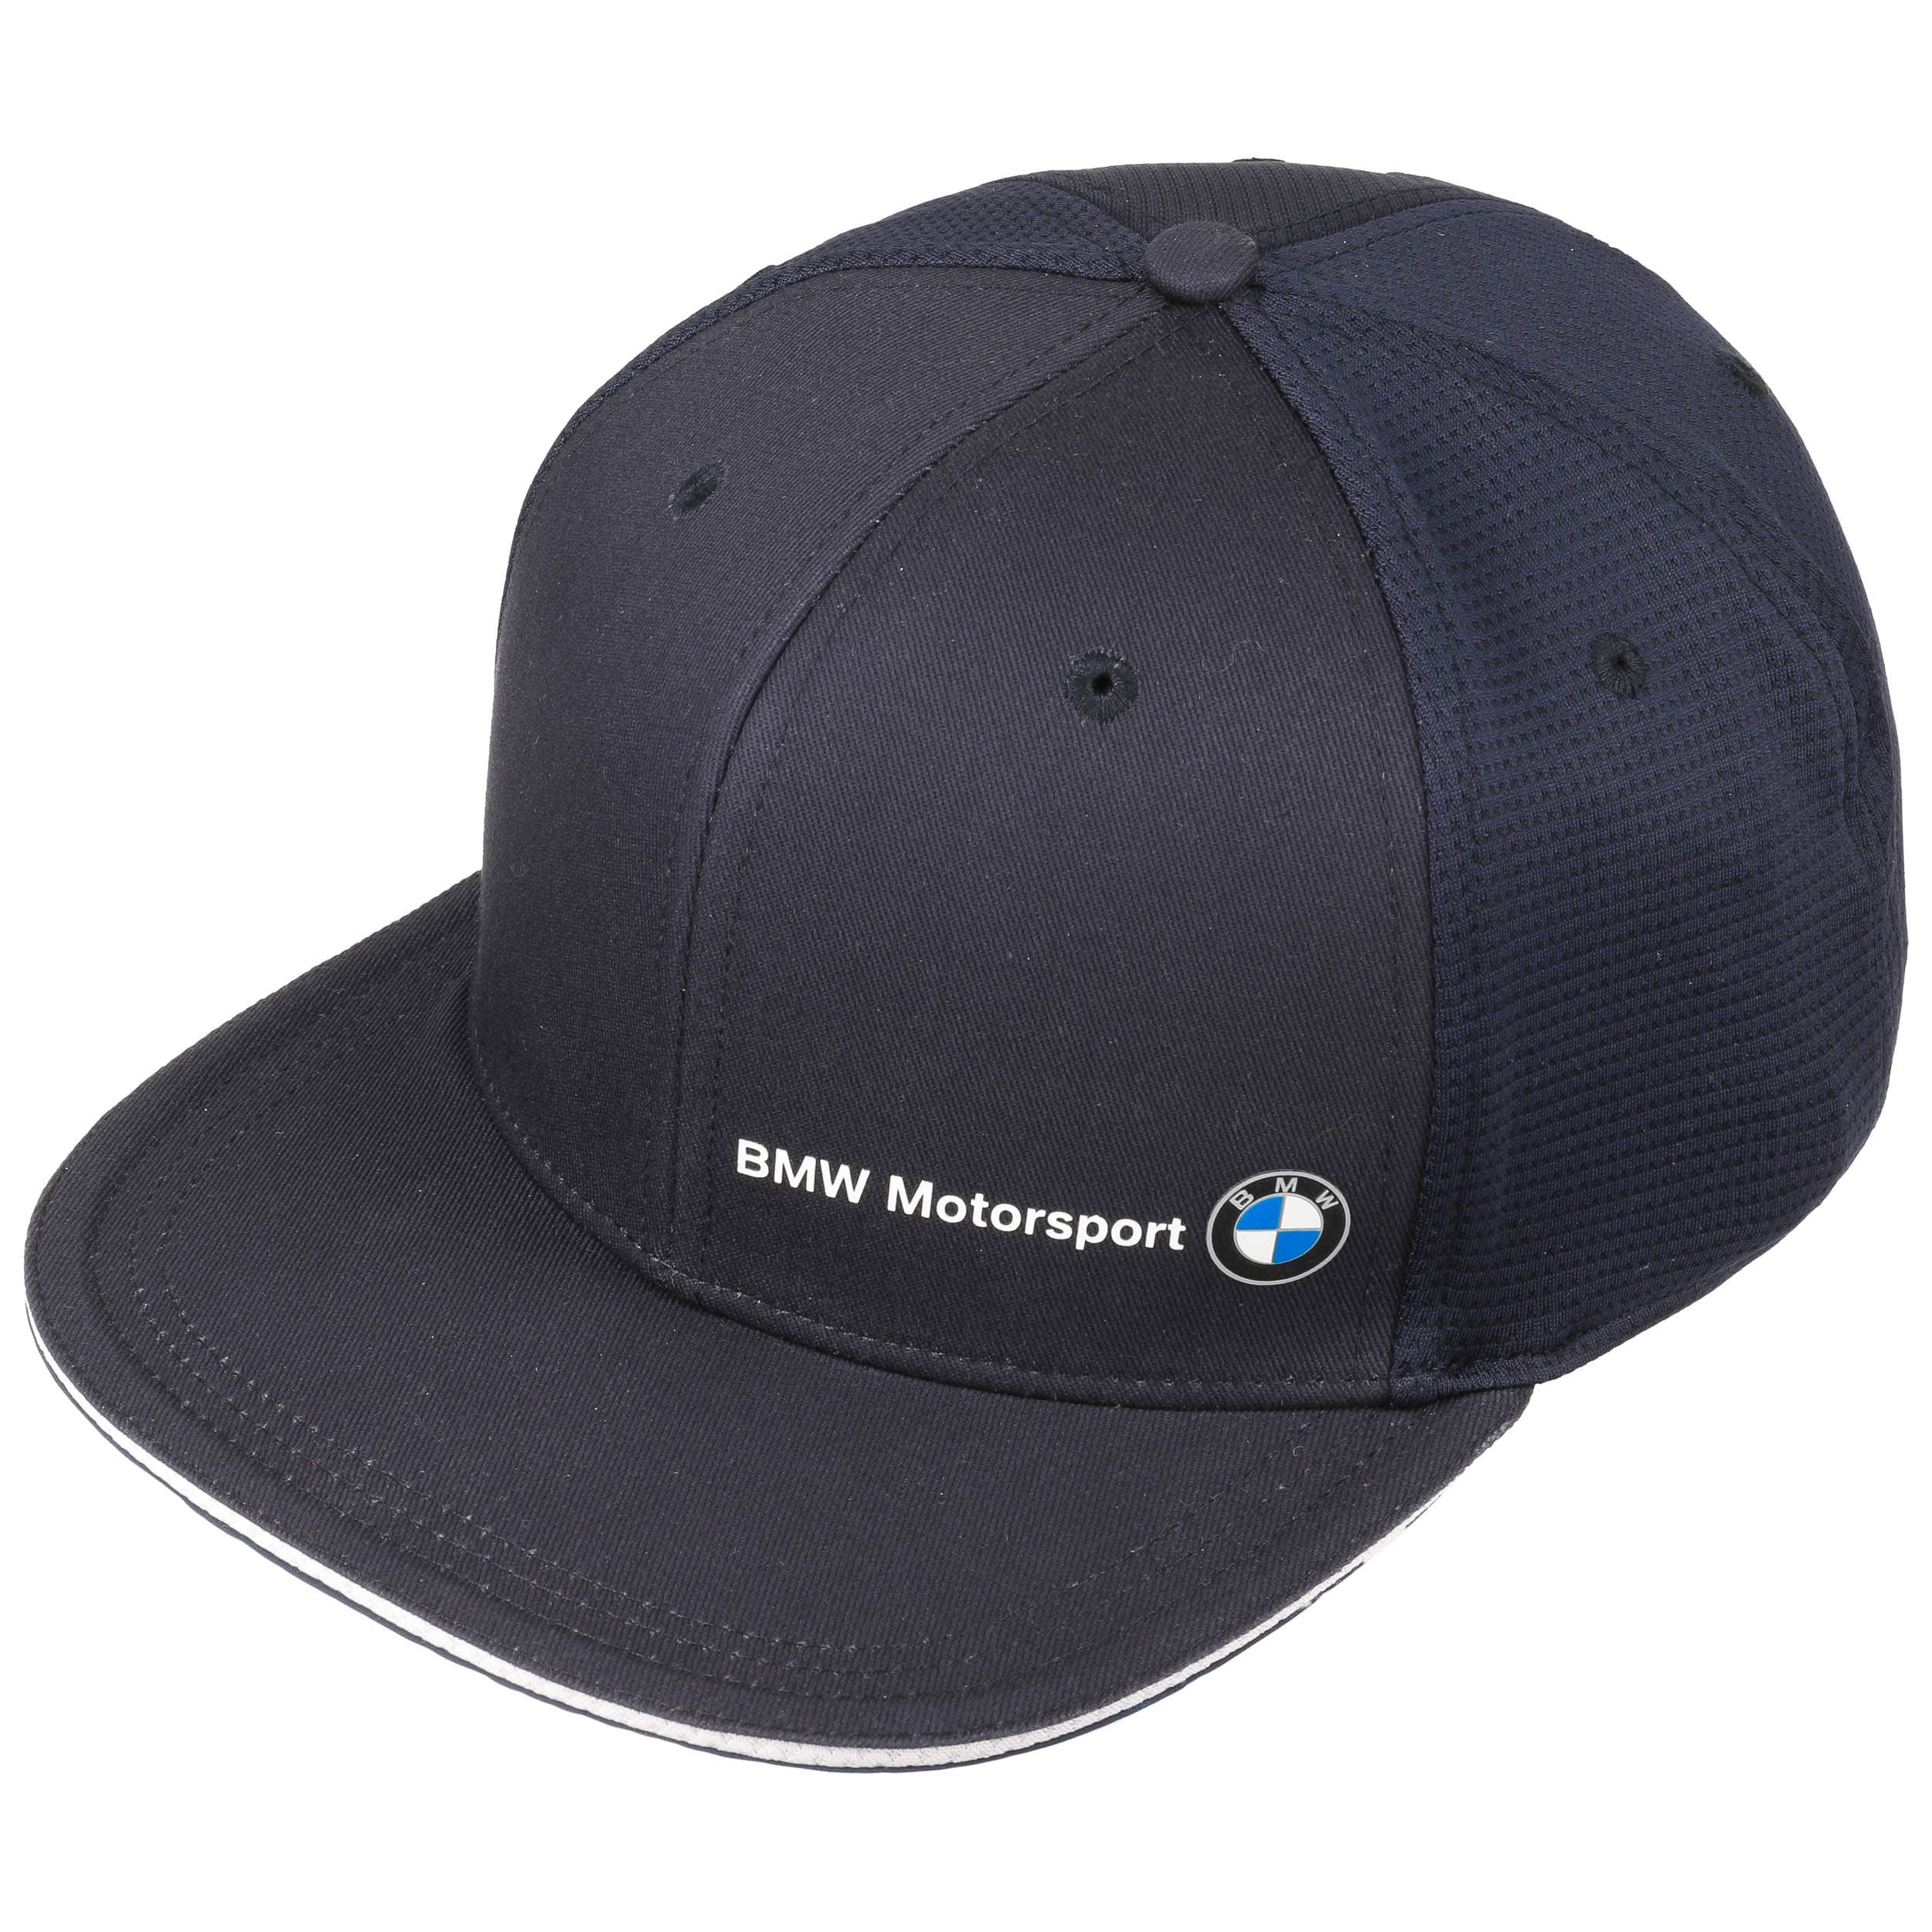 29,95 € PUMA Brim Flat Motorsport BMW - Cap by